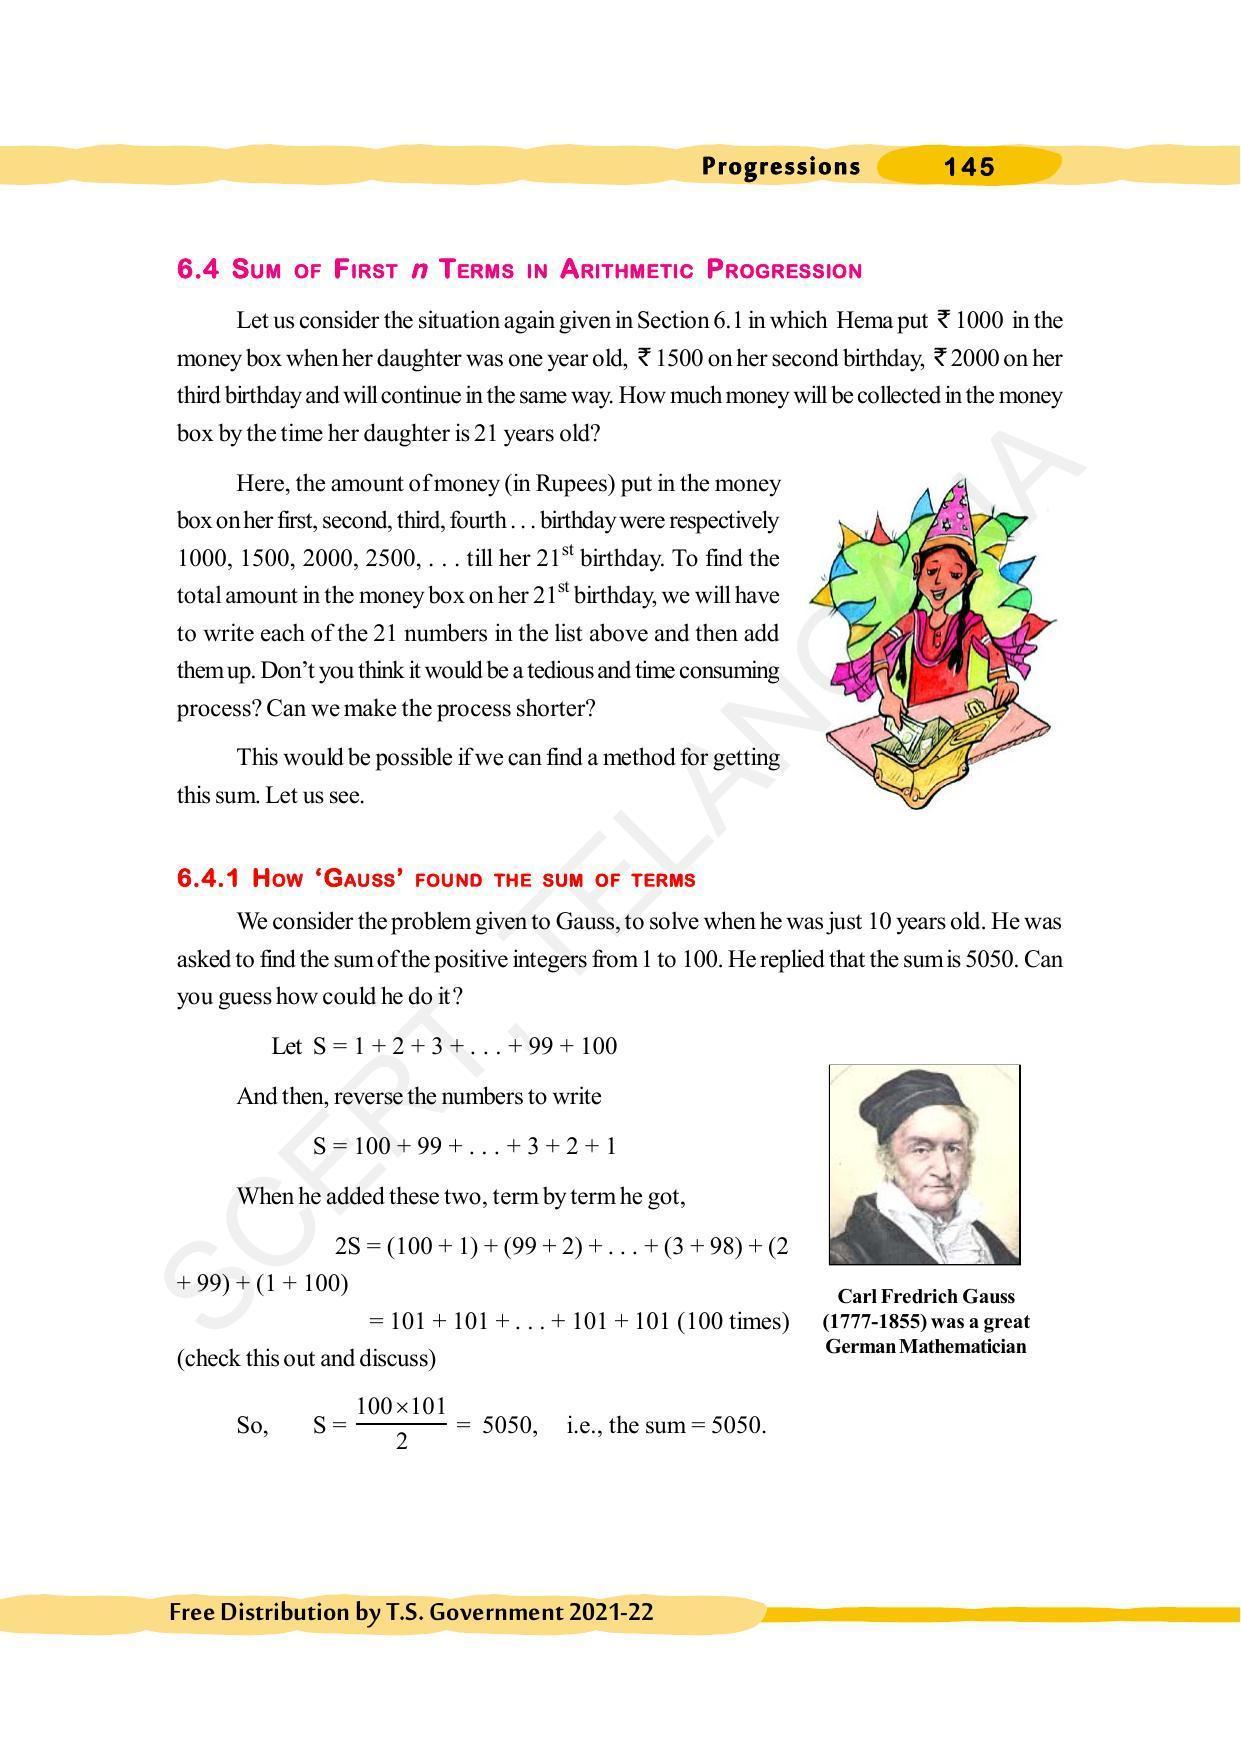 TS SCERT Class 10 Maths (English Medium) Text Book - Page 155